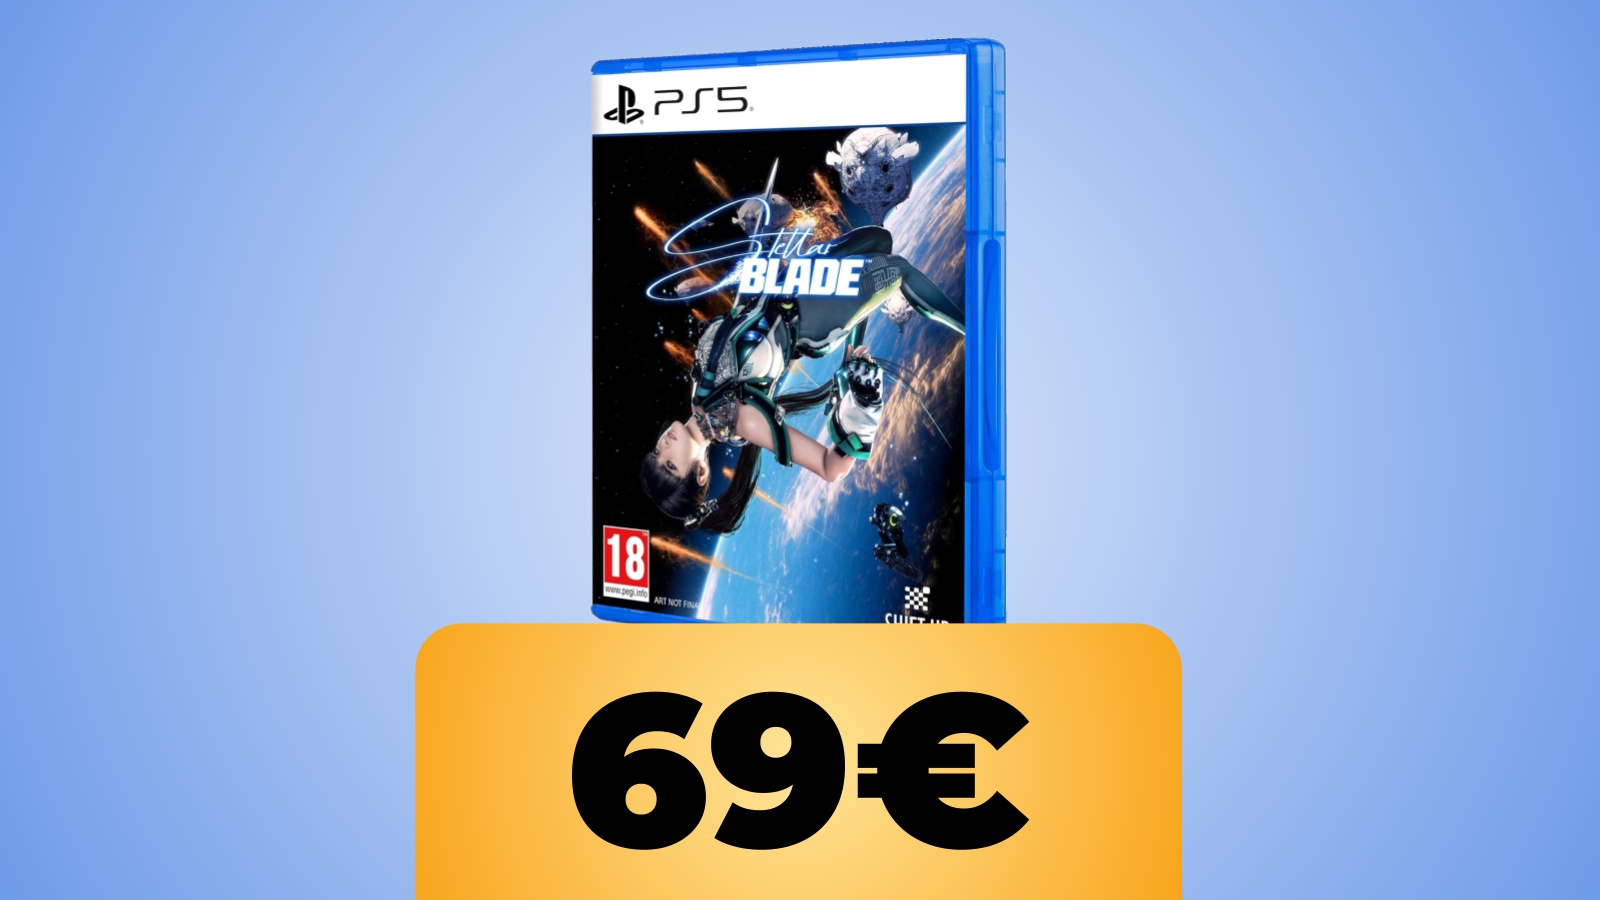 Stellar Blade: prenotazione del gioco PS5 su Amazon Italia disponibile in sconto